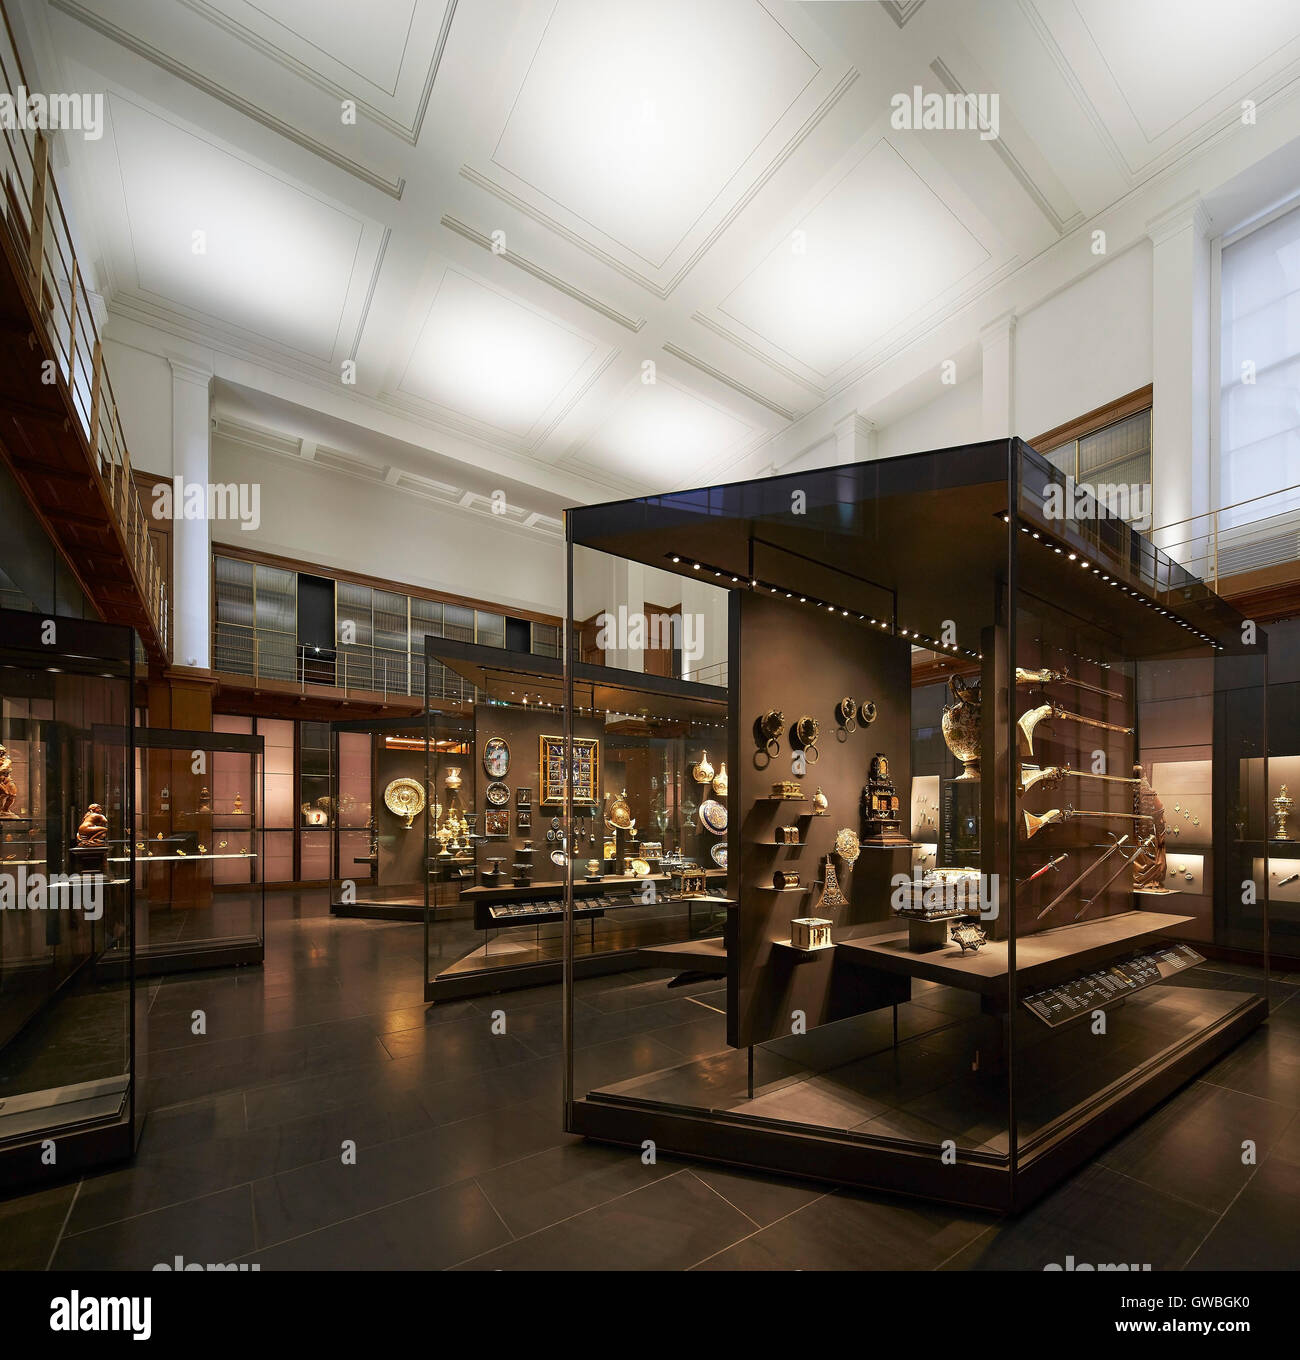 Gesamtansicht mit Artefcat zeigt. Waddesdon Vermächtnis Galerie im British Museum, London, Vereinigtes Königreich. Architekt: Stanton Williams, 2015. Stockfoto